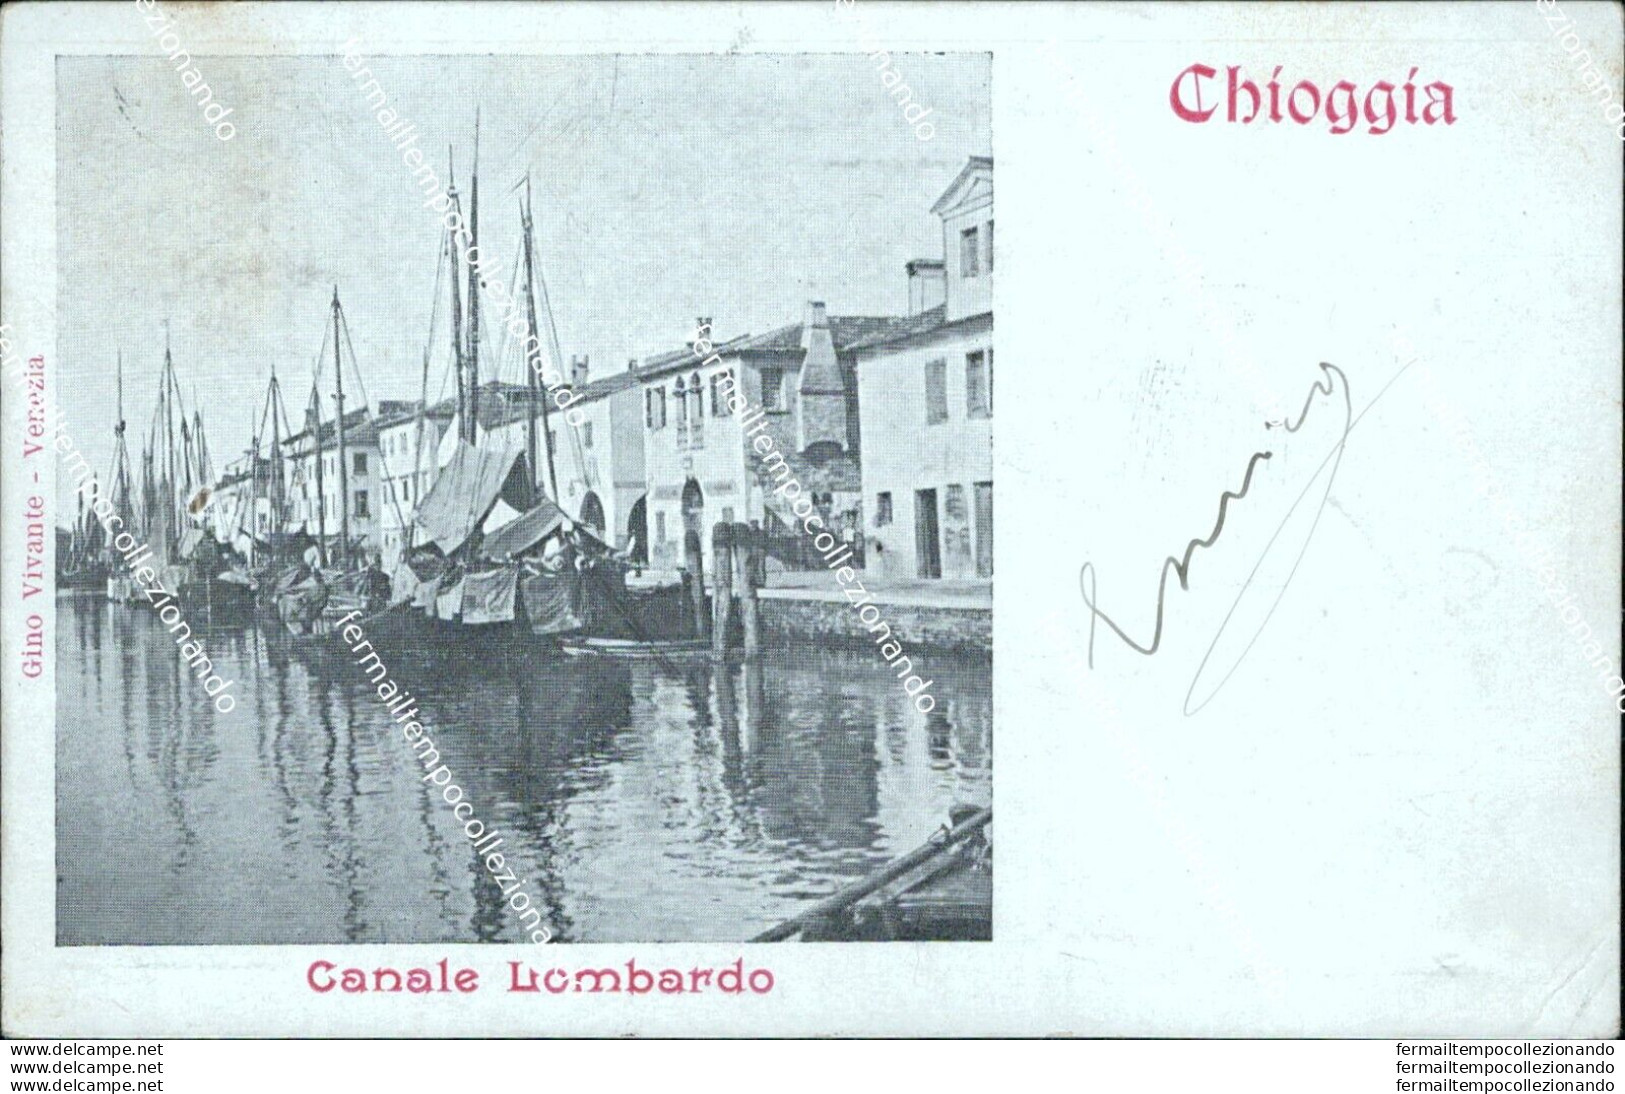 As604 Cartolina Chioggia Canale Lombardo Venezia - Venezia (Venice)